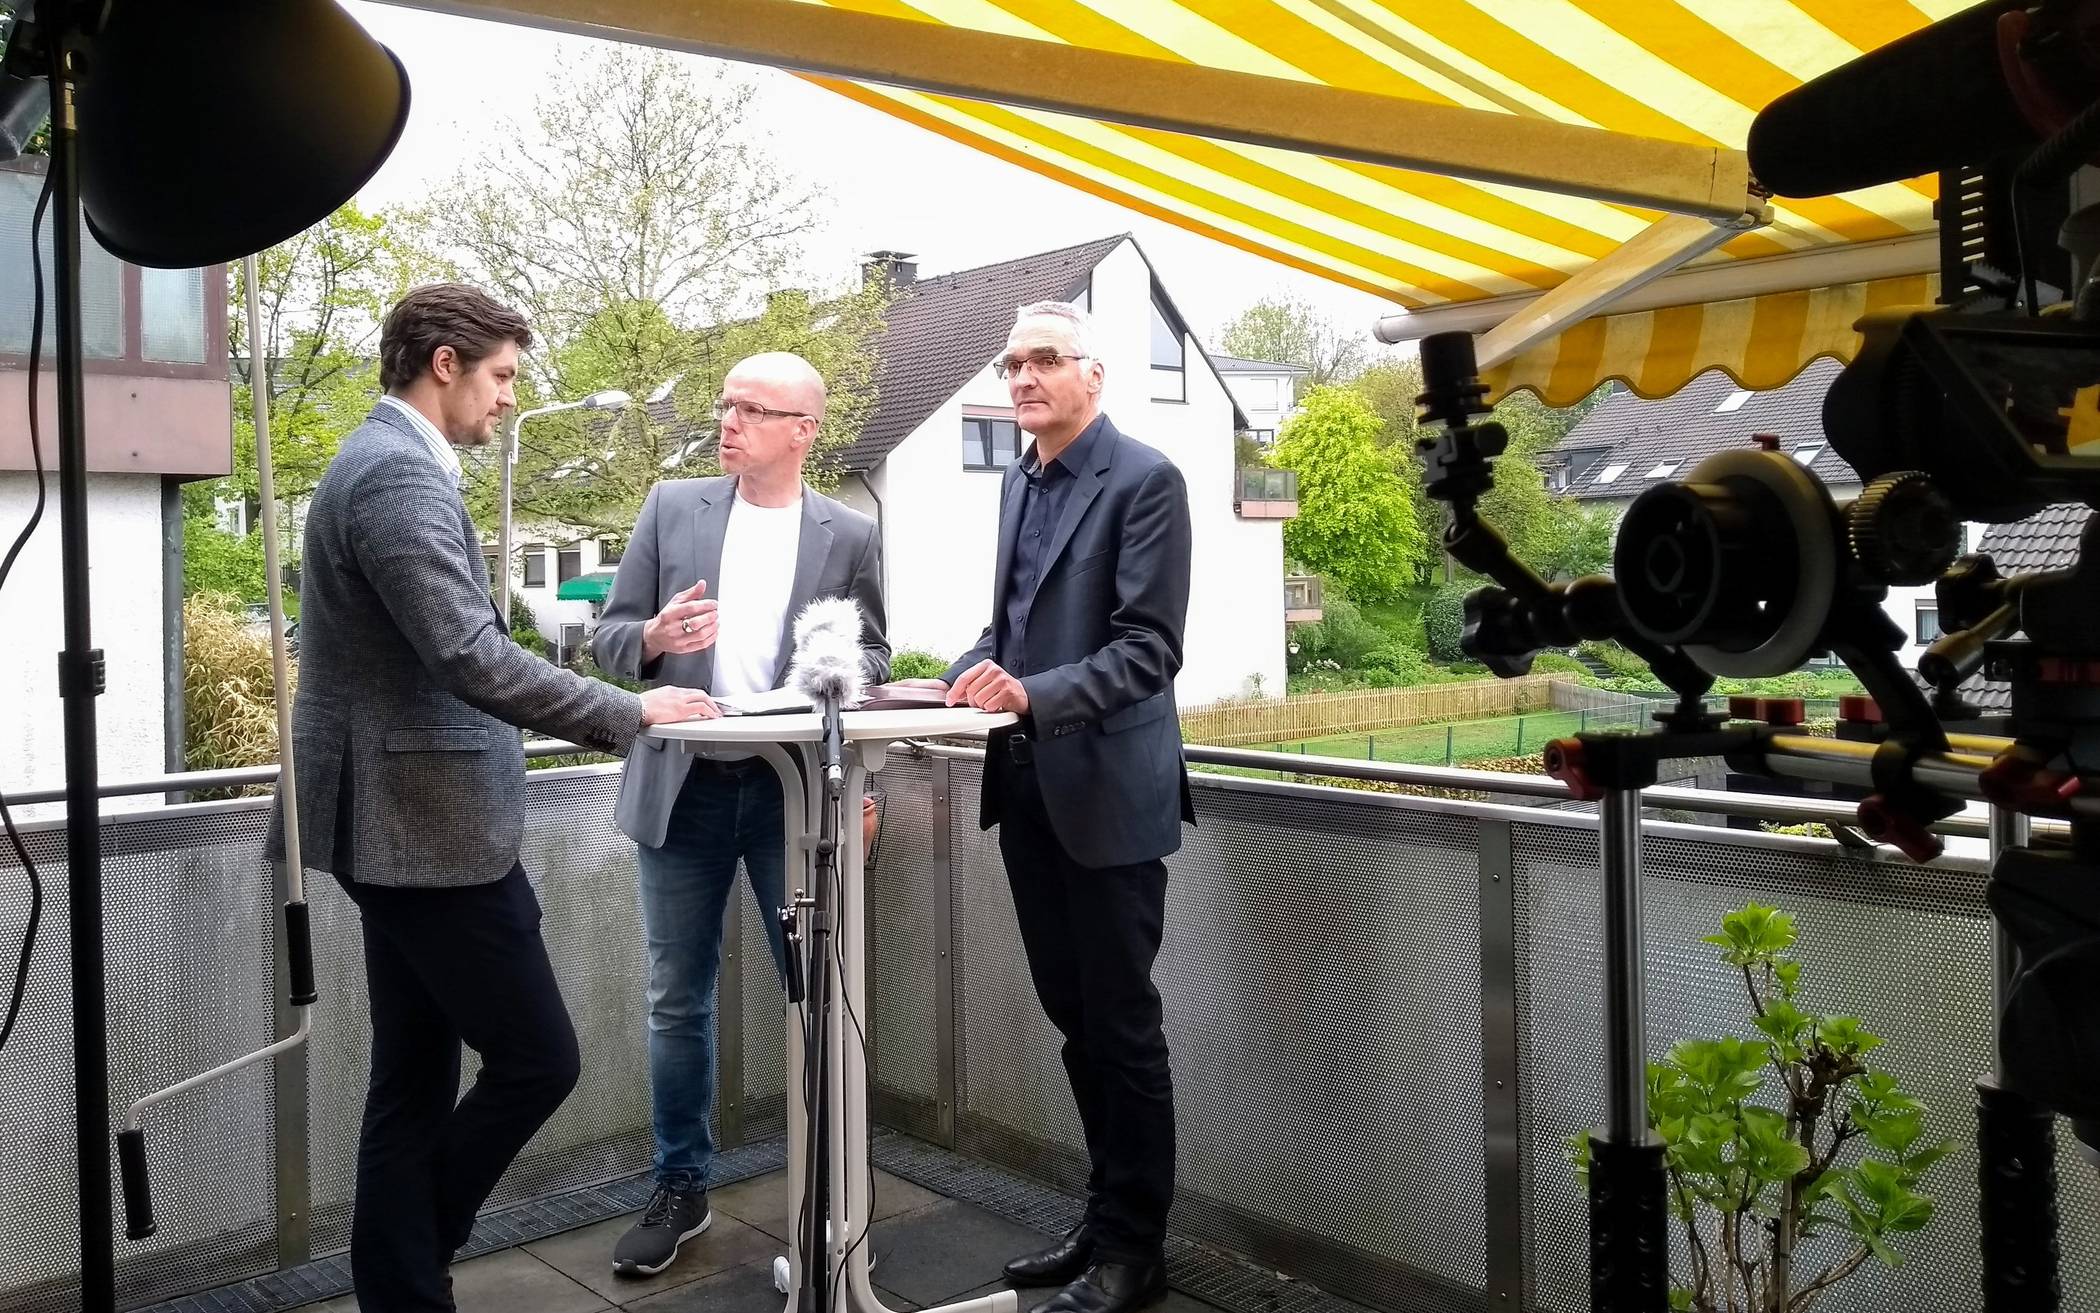  Tim Holthaus, Moderator Andreas Menz und Dietmar Bell vor laufender Kamera auf Peter Vorstehers Dachterasse. 